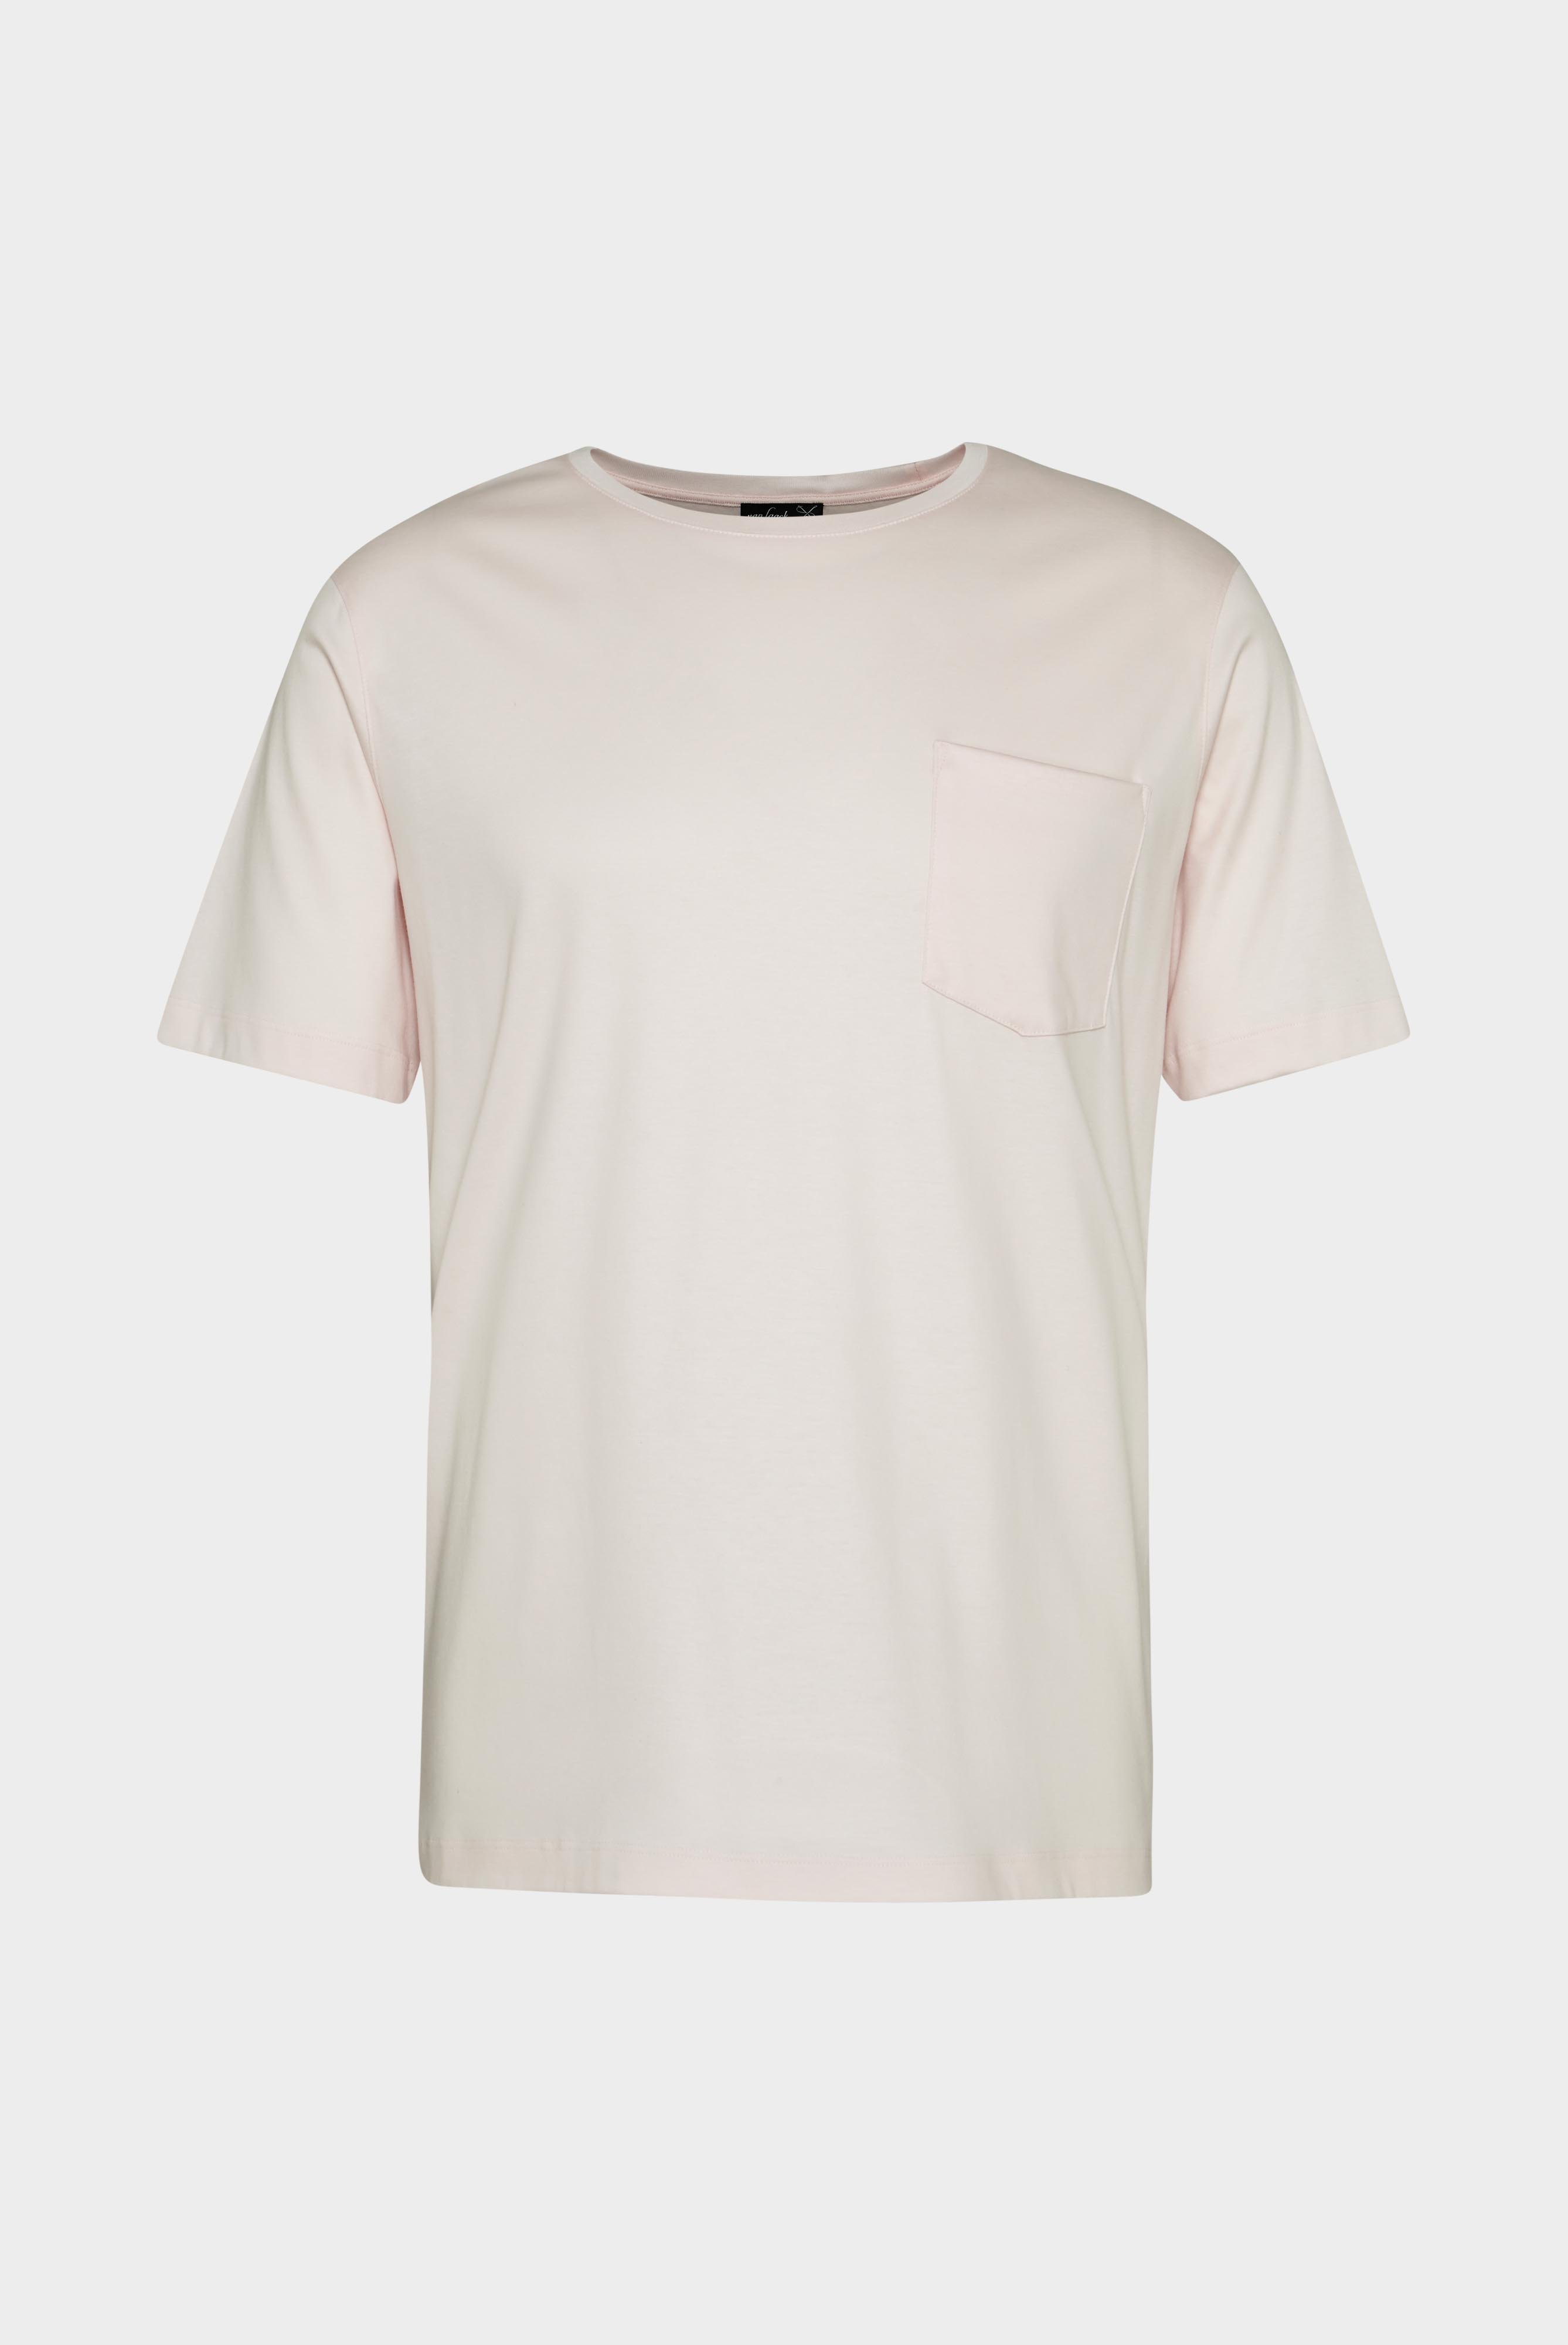 T-Shirts+Oversize Jersey T-Shirt mit Brusttasche+20.1776.GZ.180031.510.M